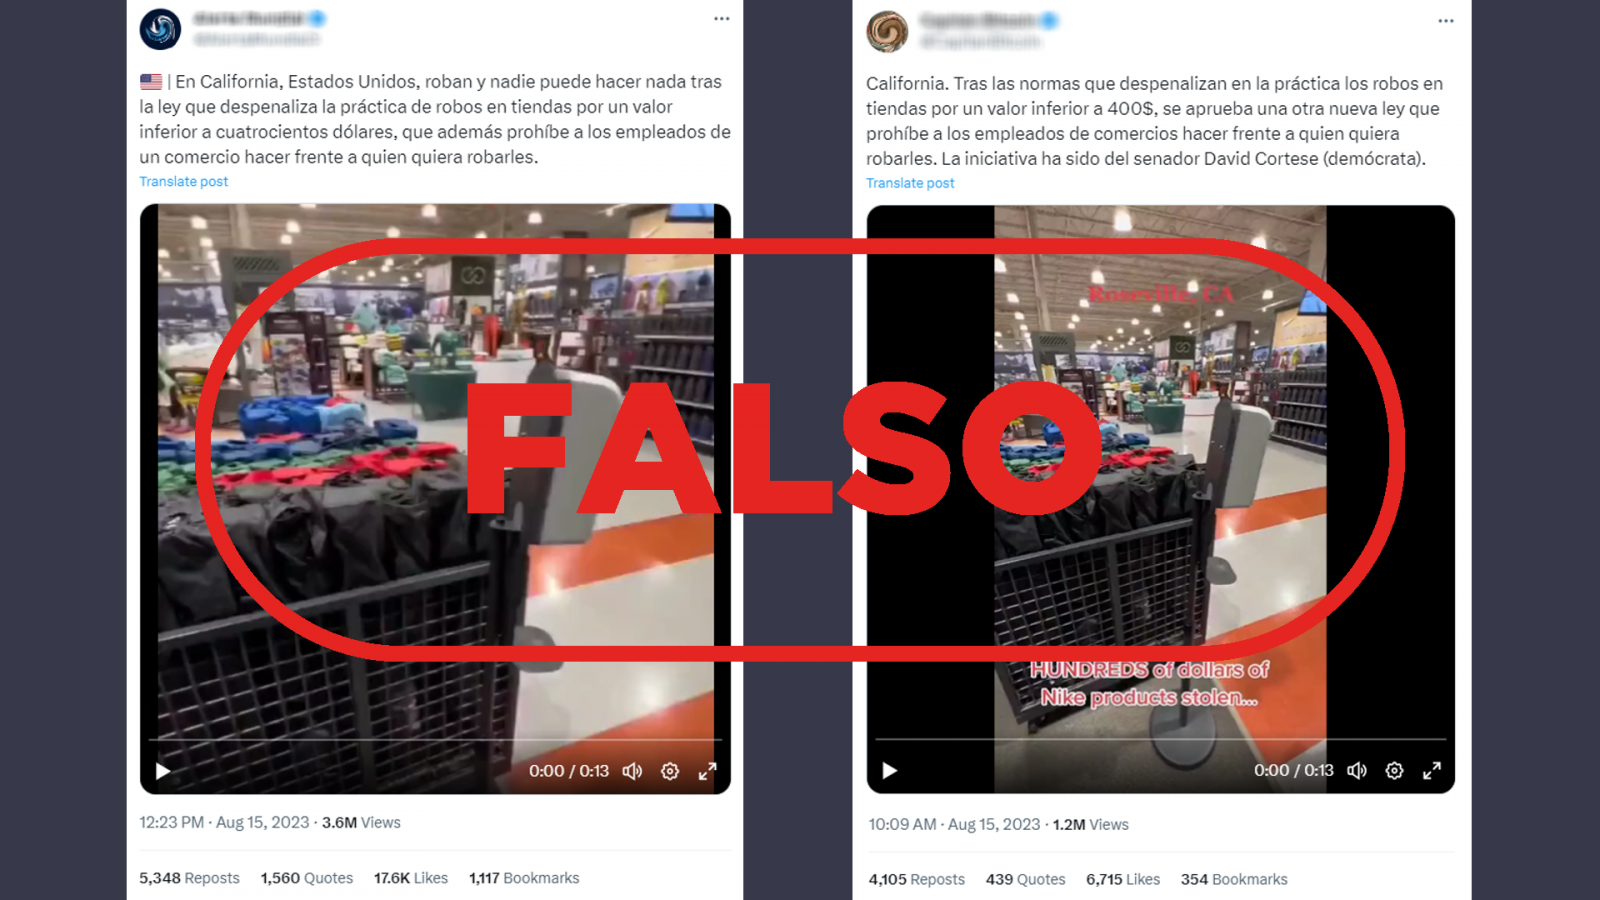 Tuits que difunden la falsa idea de que California ha despenalizado los robos en tiendas. Con el sello FALSO en rojo.